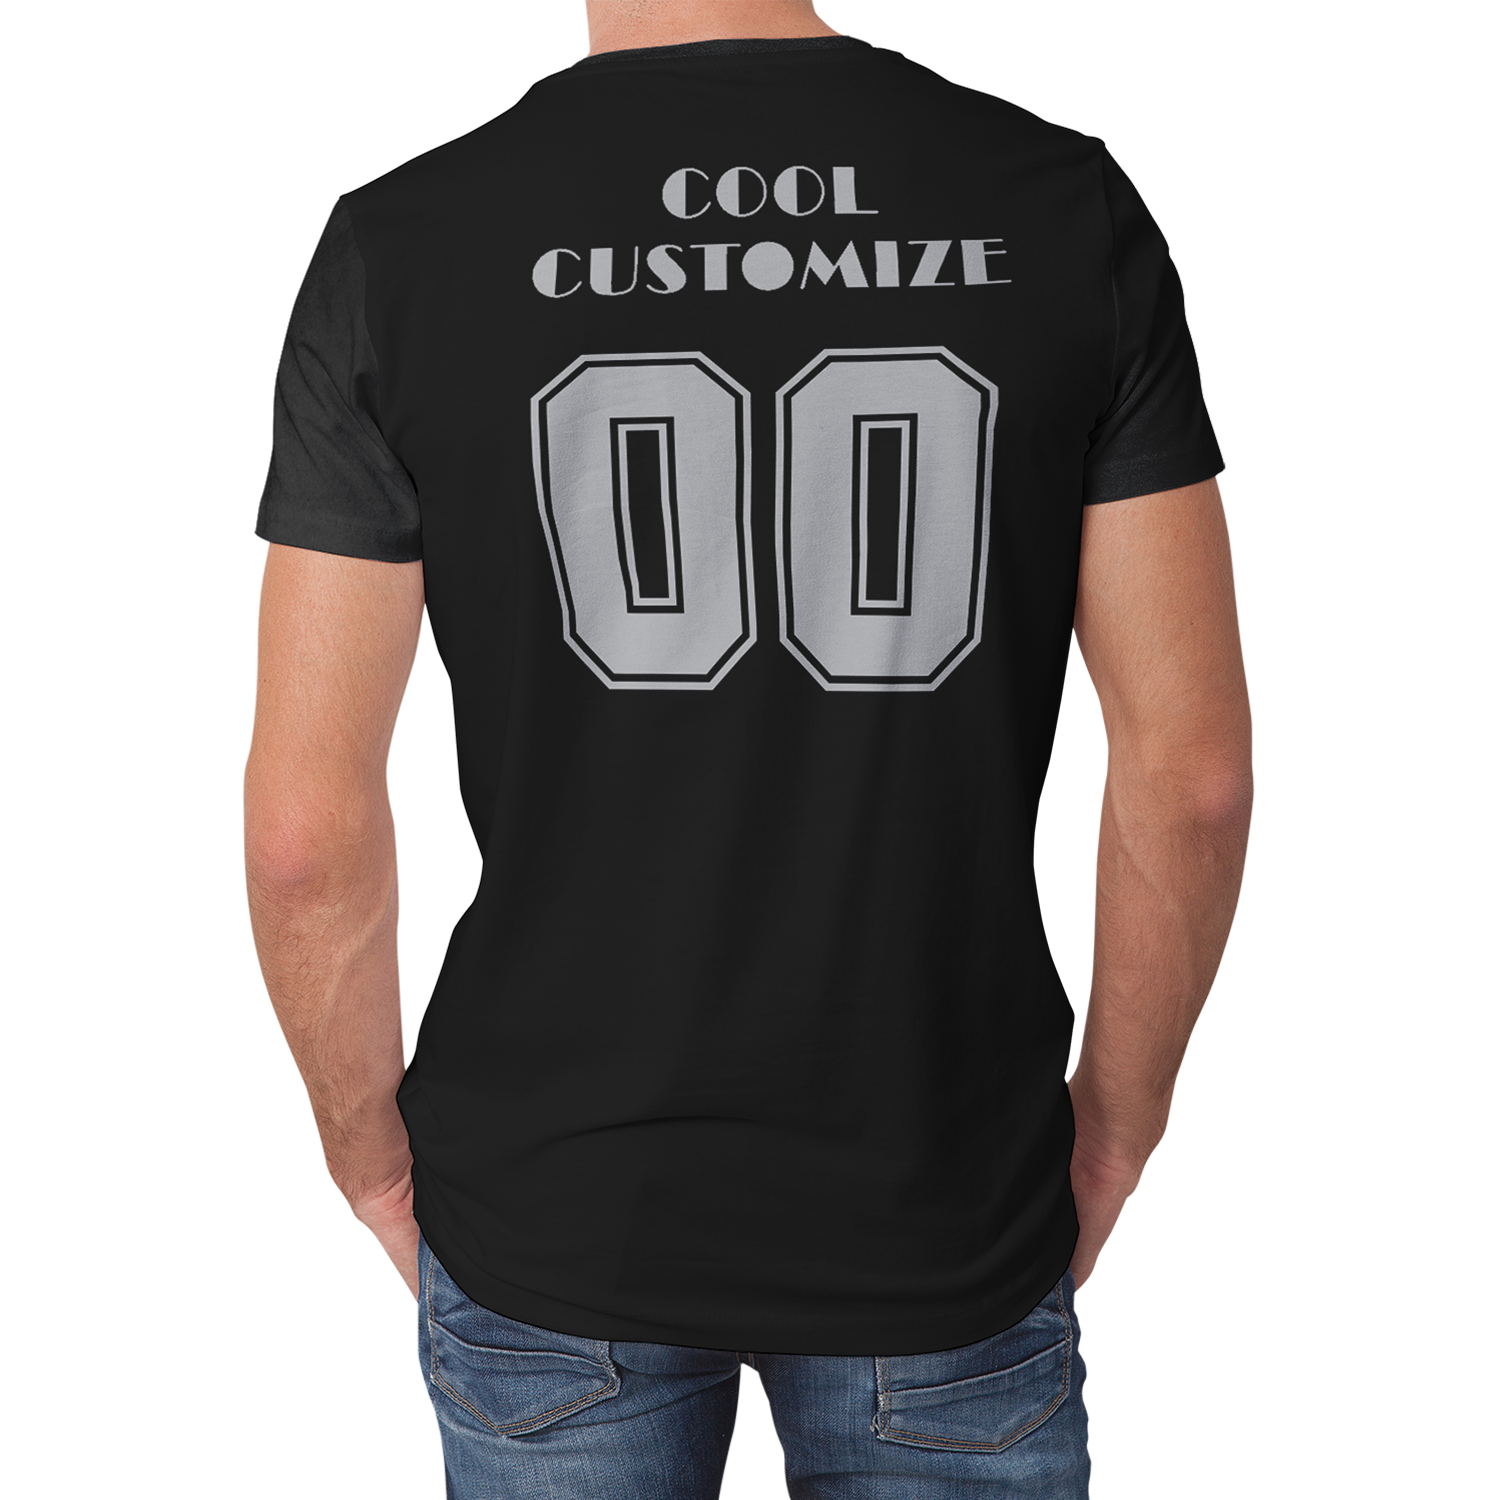 Hot Sell Custom Design Full Print on Demand Short Sleeve T-shirt for Men/Women